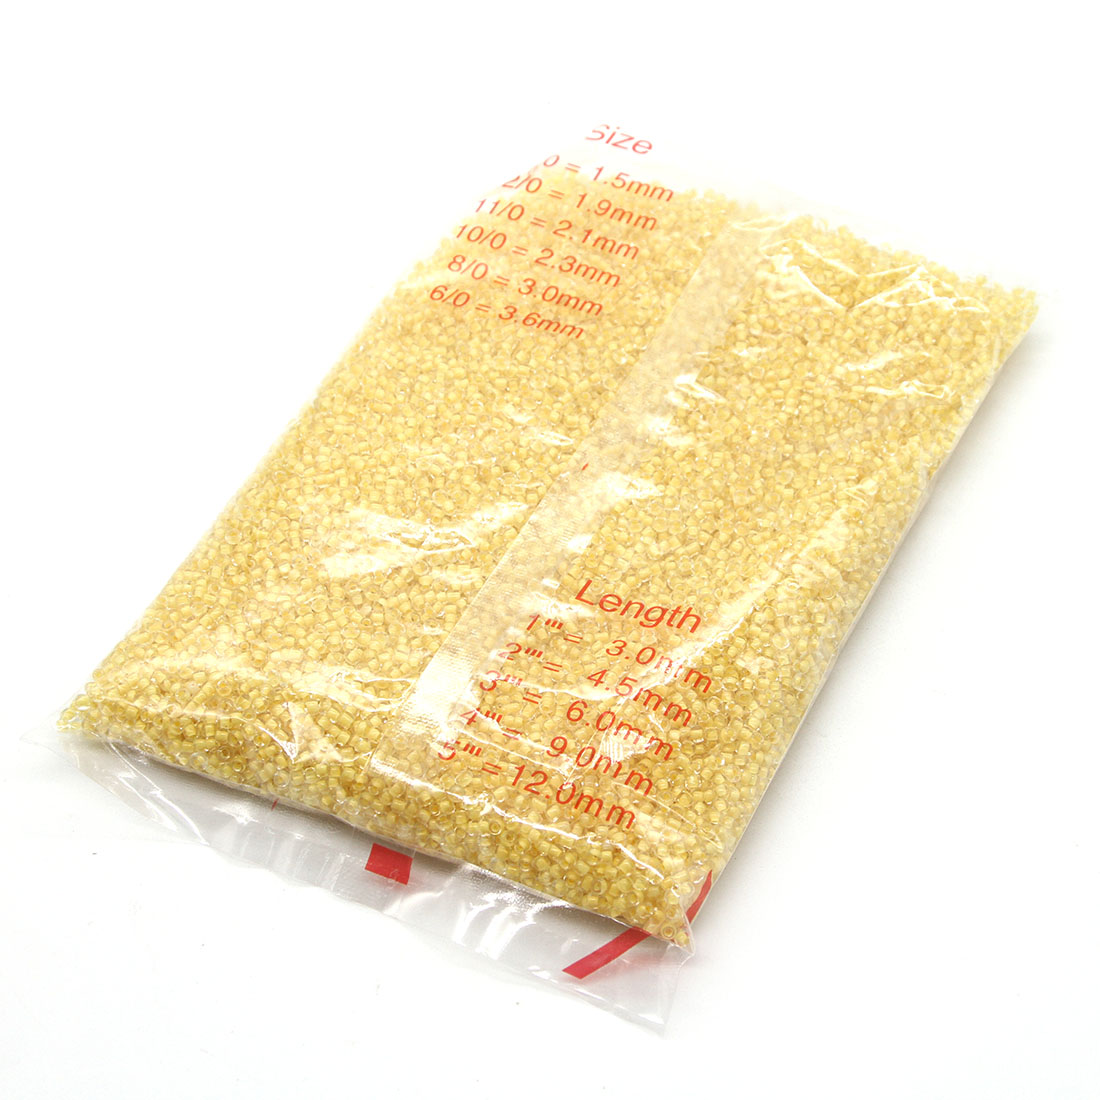 Lemon yellow 2mm 30,000 packs